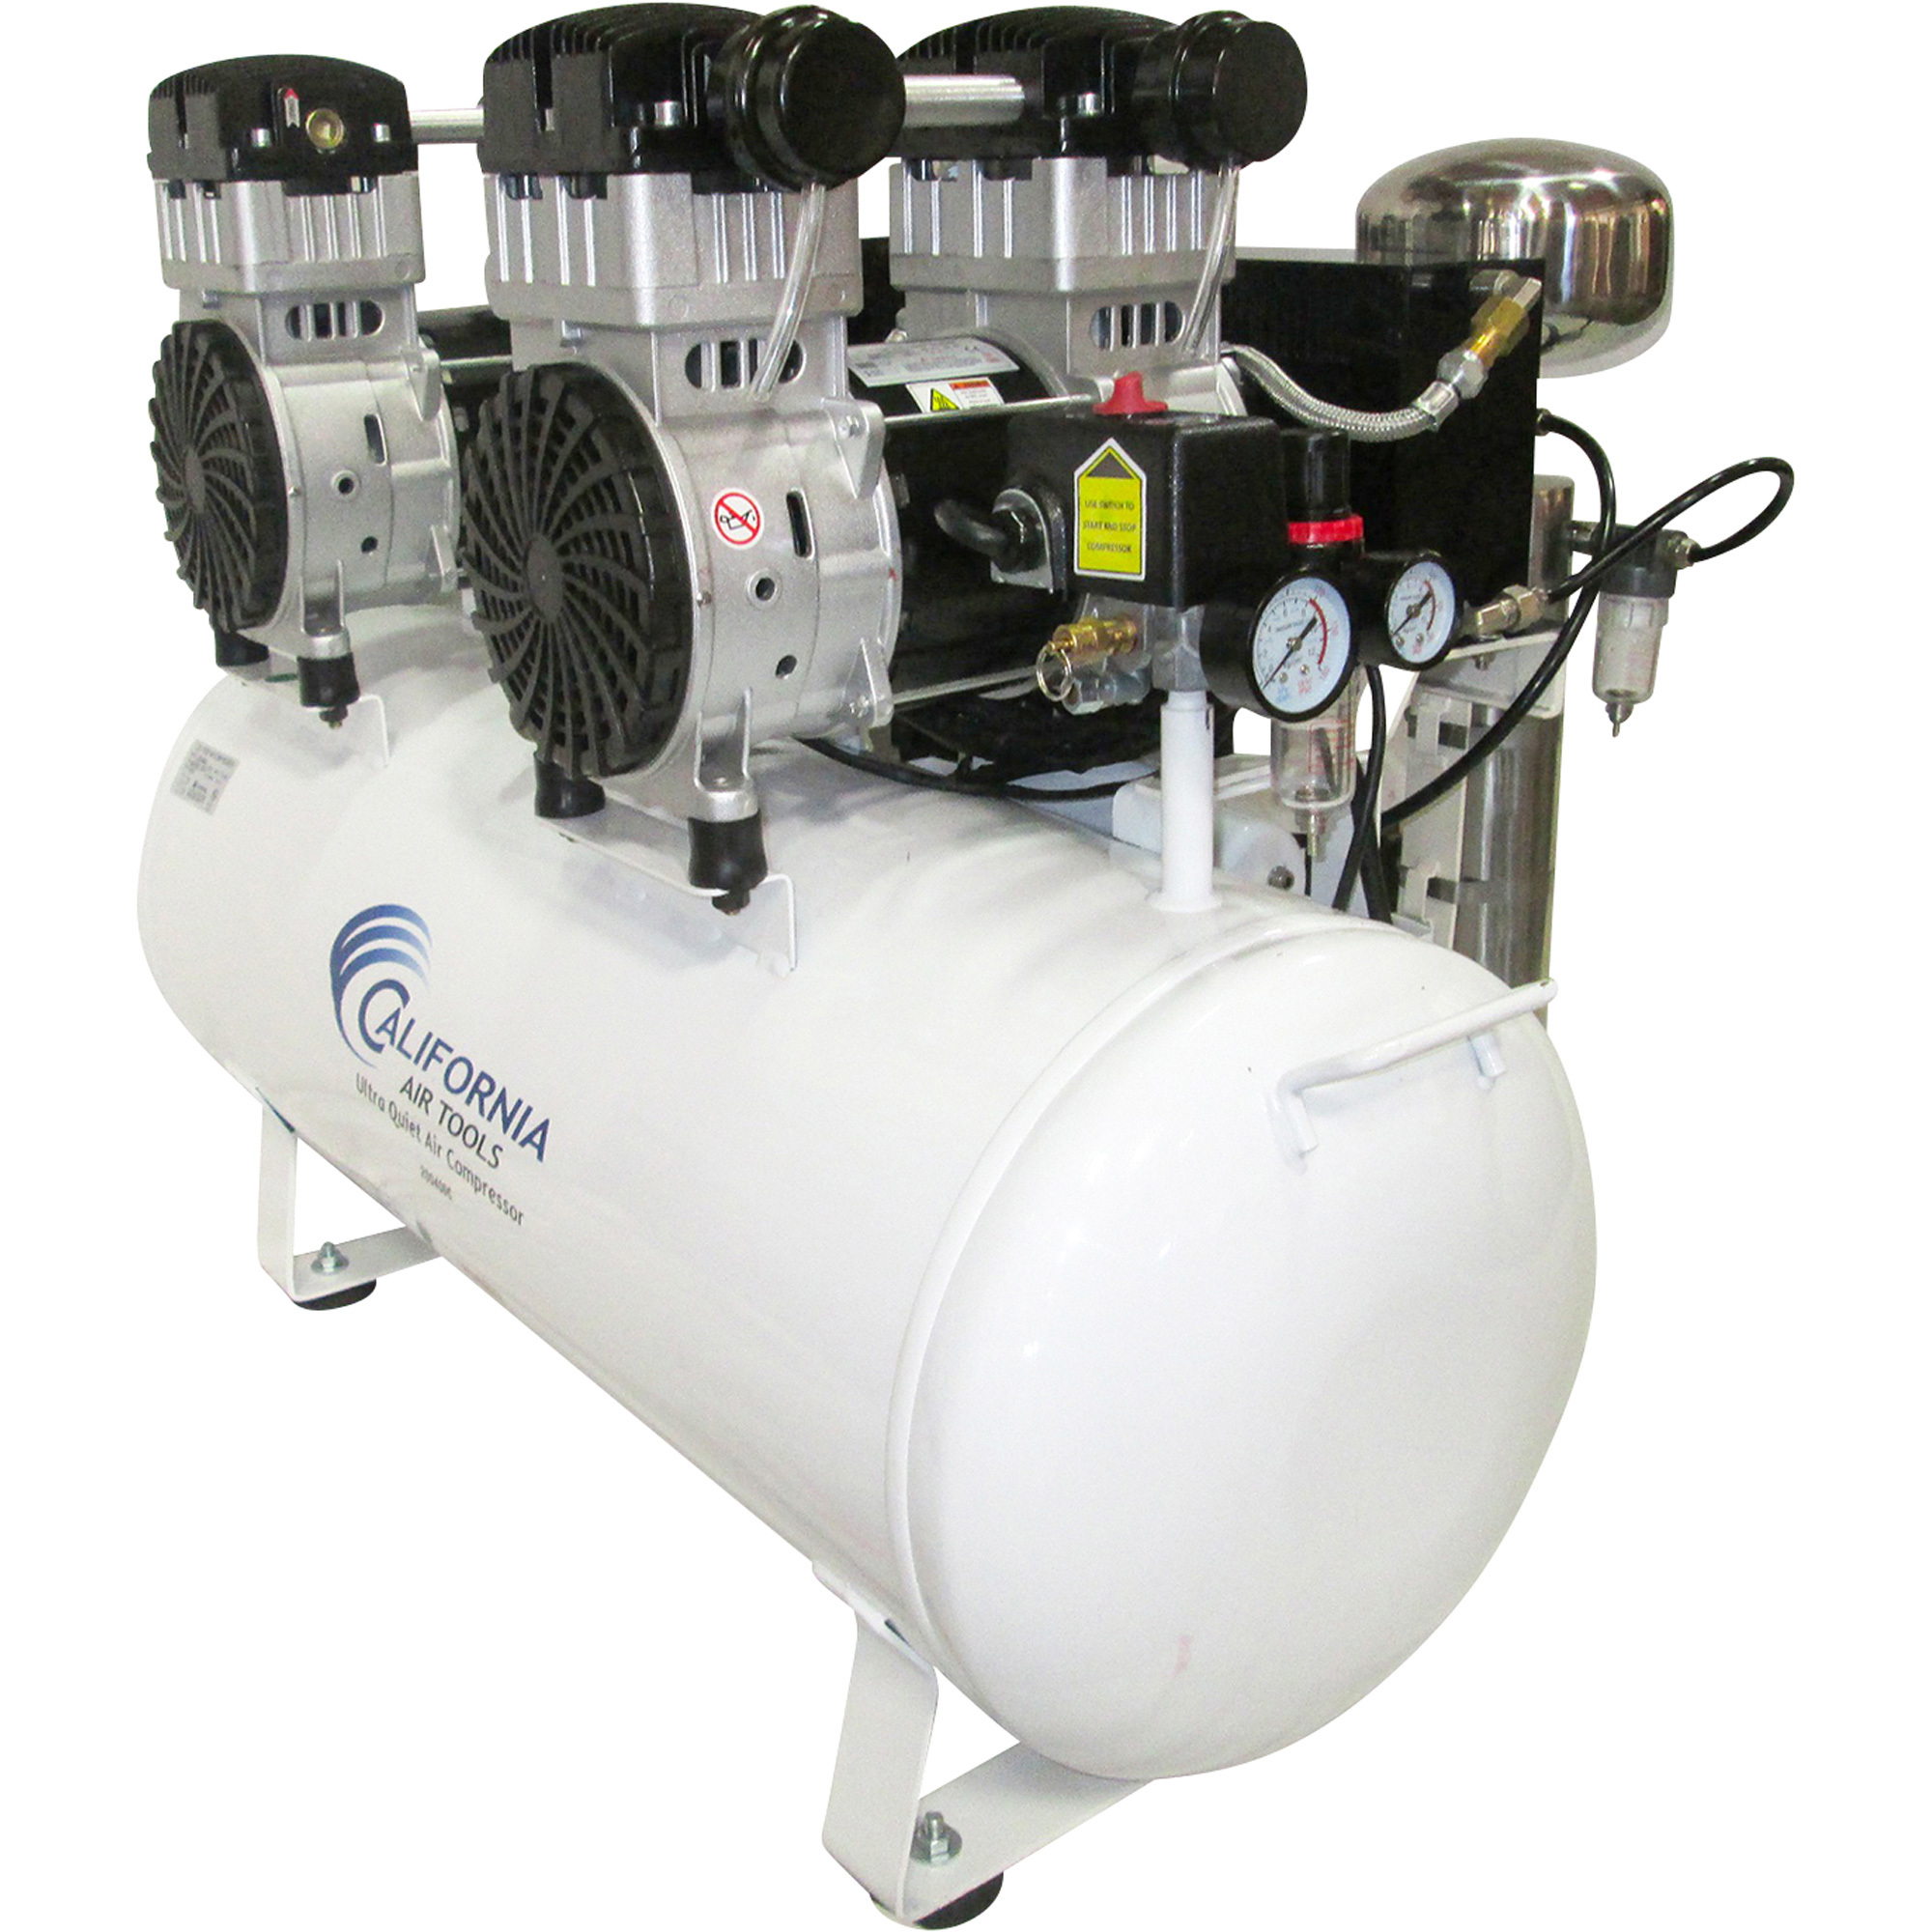 20-Gallon Air Compressor, 2 HP, 14 Amps, Model - California Air Tools CAT-20040DC